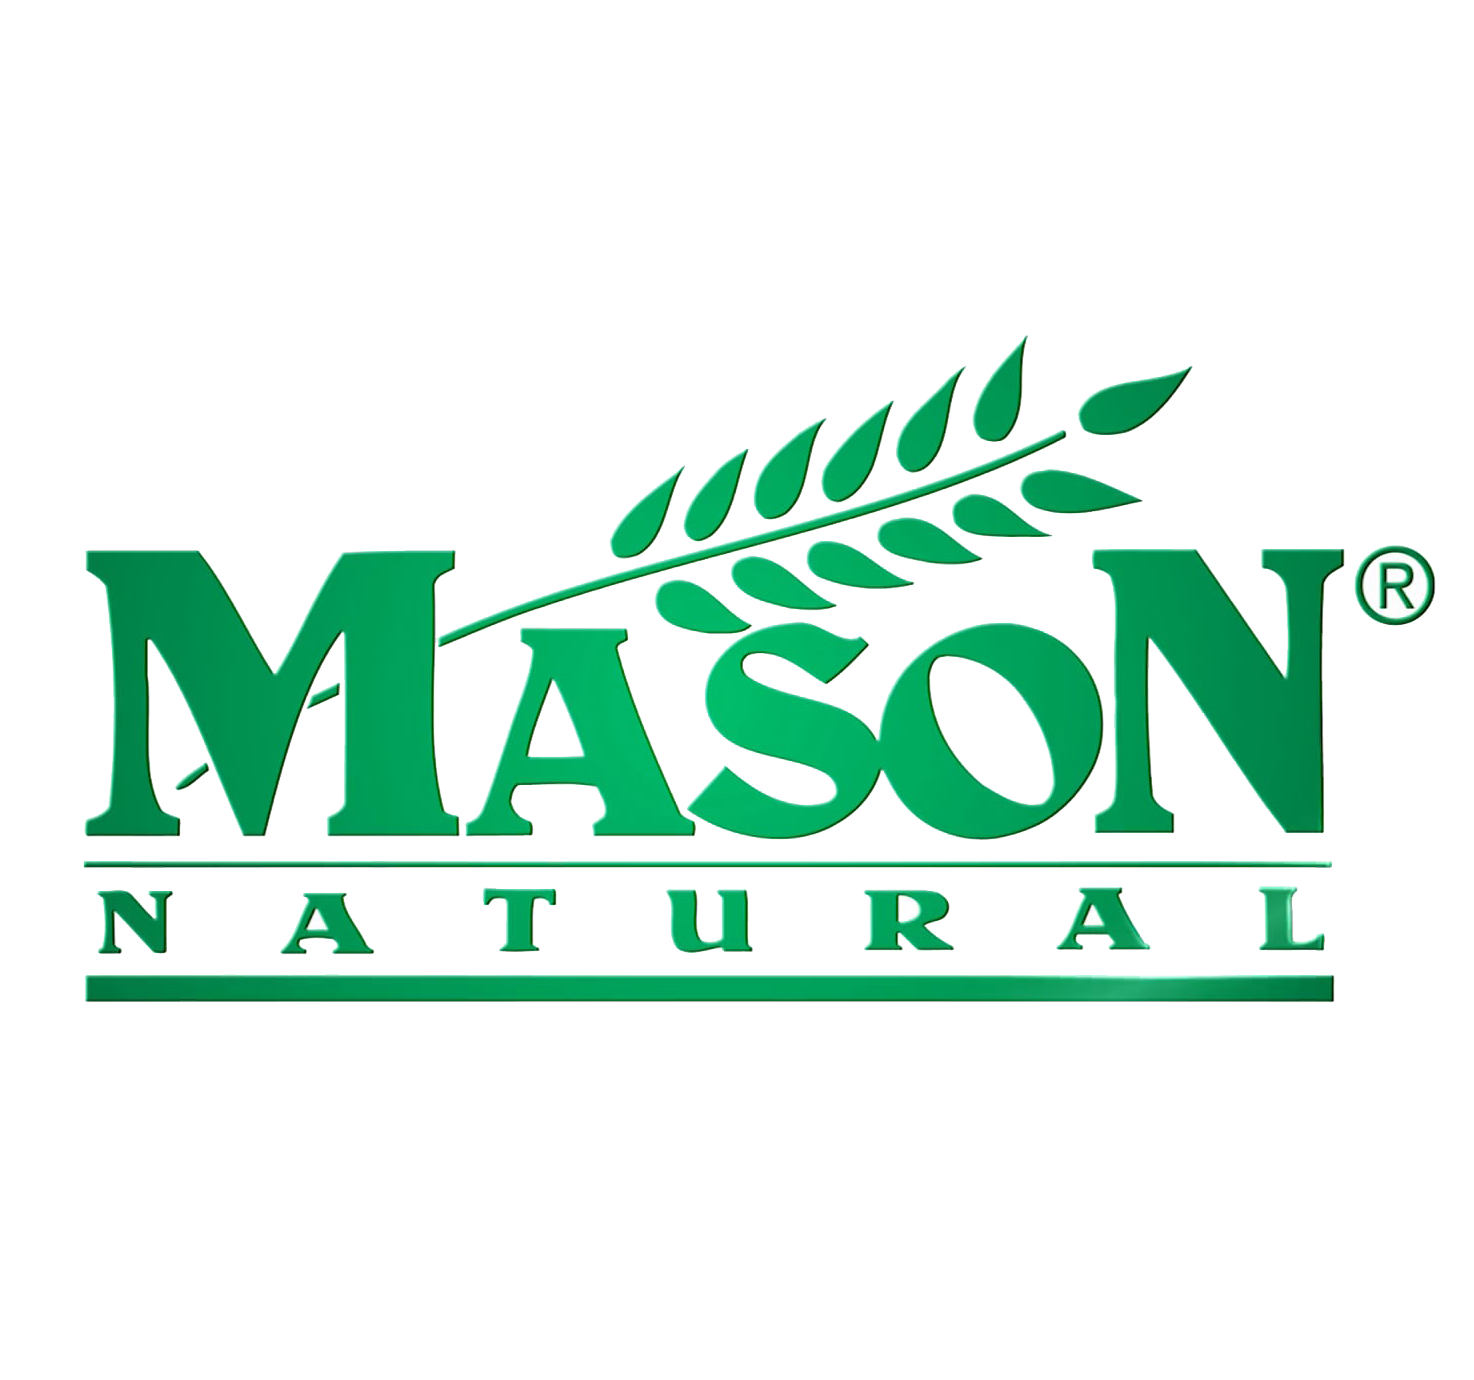 Mason natural